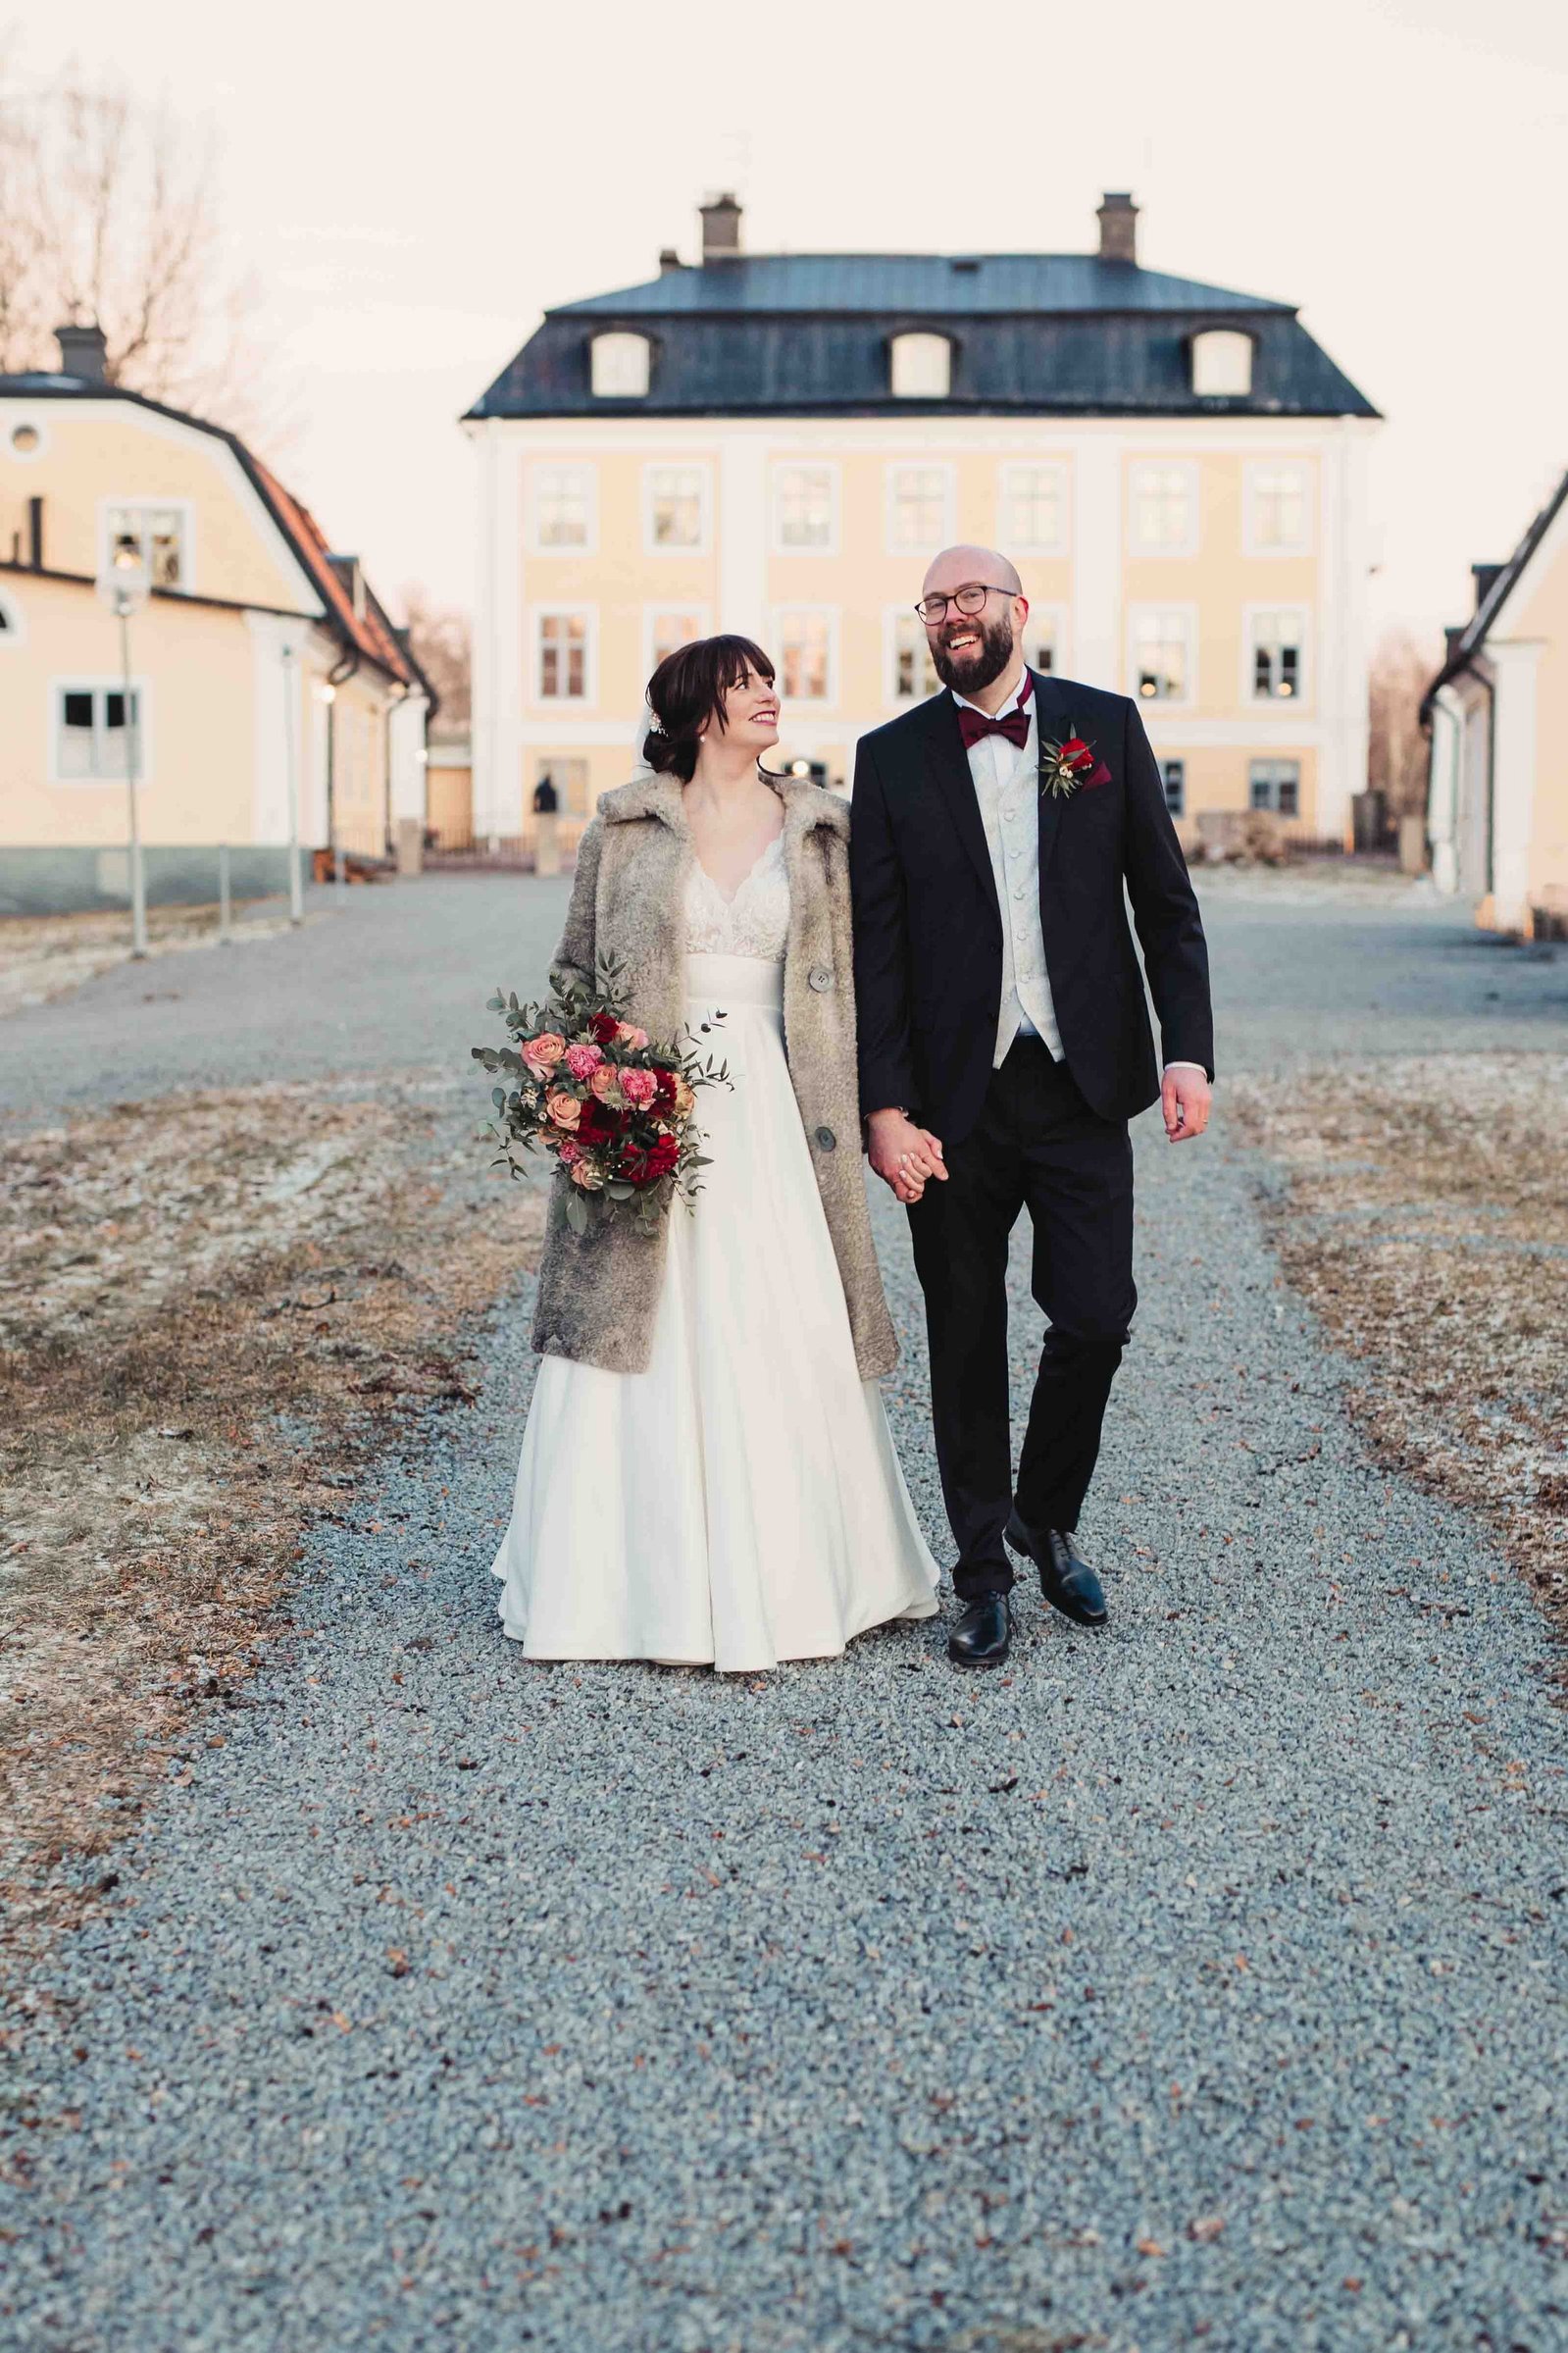 Bröllopspar går hand i hand på en grusgång framför en herrgård. Han i mörk kostym och glasögon, hon i lång vit klänning och vinter rock - håller sin brudbukett i andra handen.